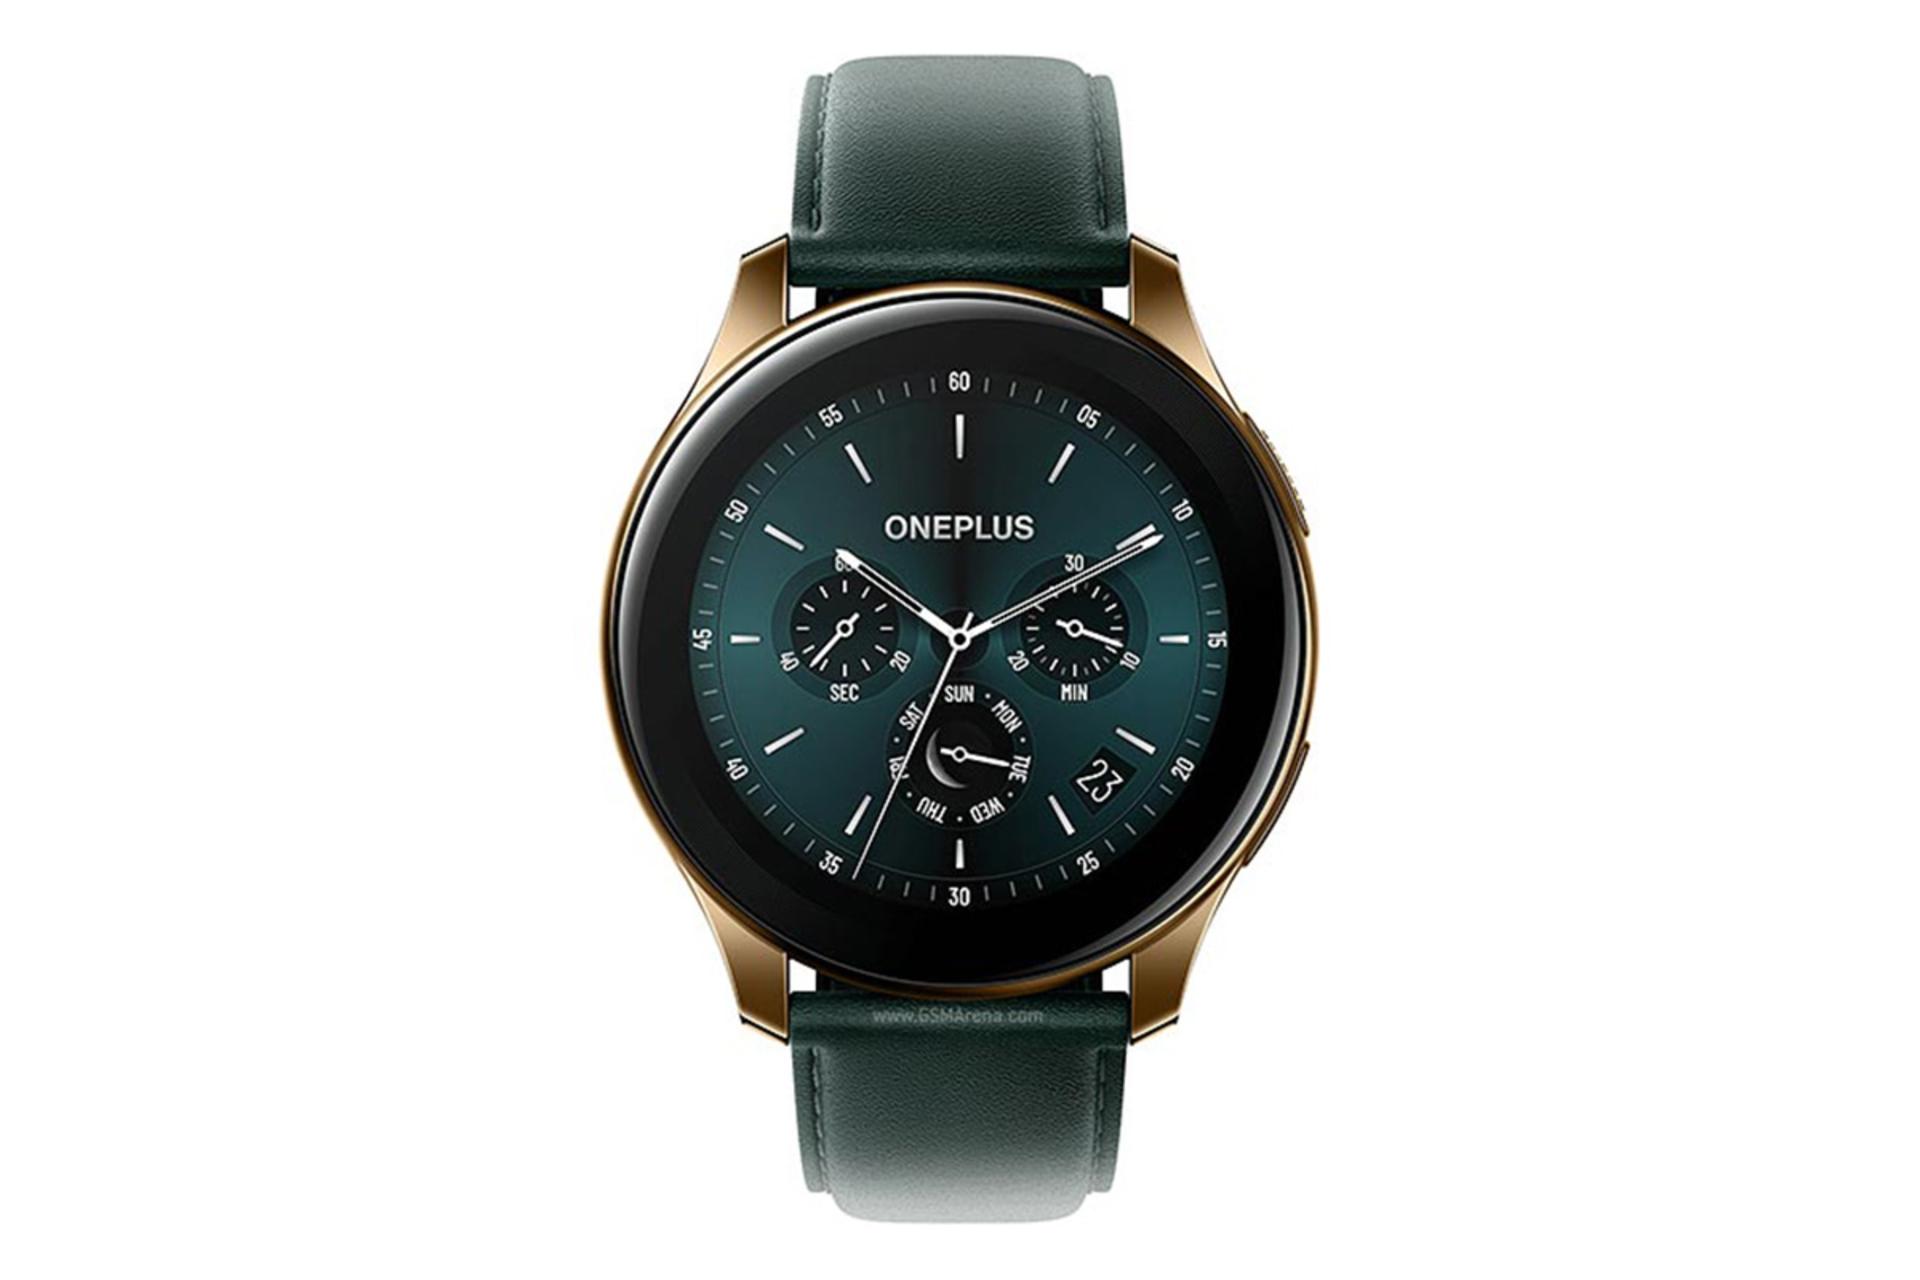 نمای جلو ساعت هوشمند وان پلاس / Oneplus Watch رنگ سبز